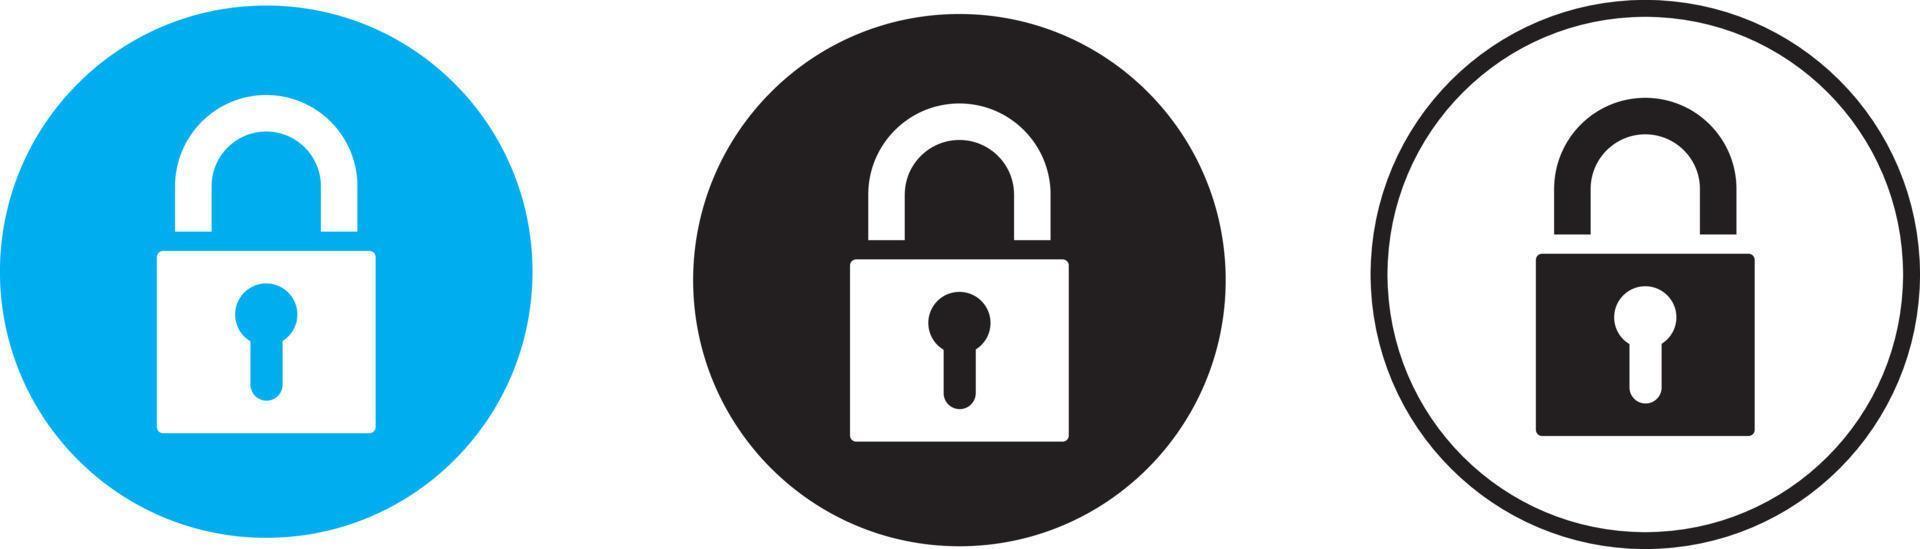 chiave, chiave, sicurezza, password, materiale illustrativo per il disegno vettoriale dell'icona dell'app per la privacy